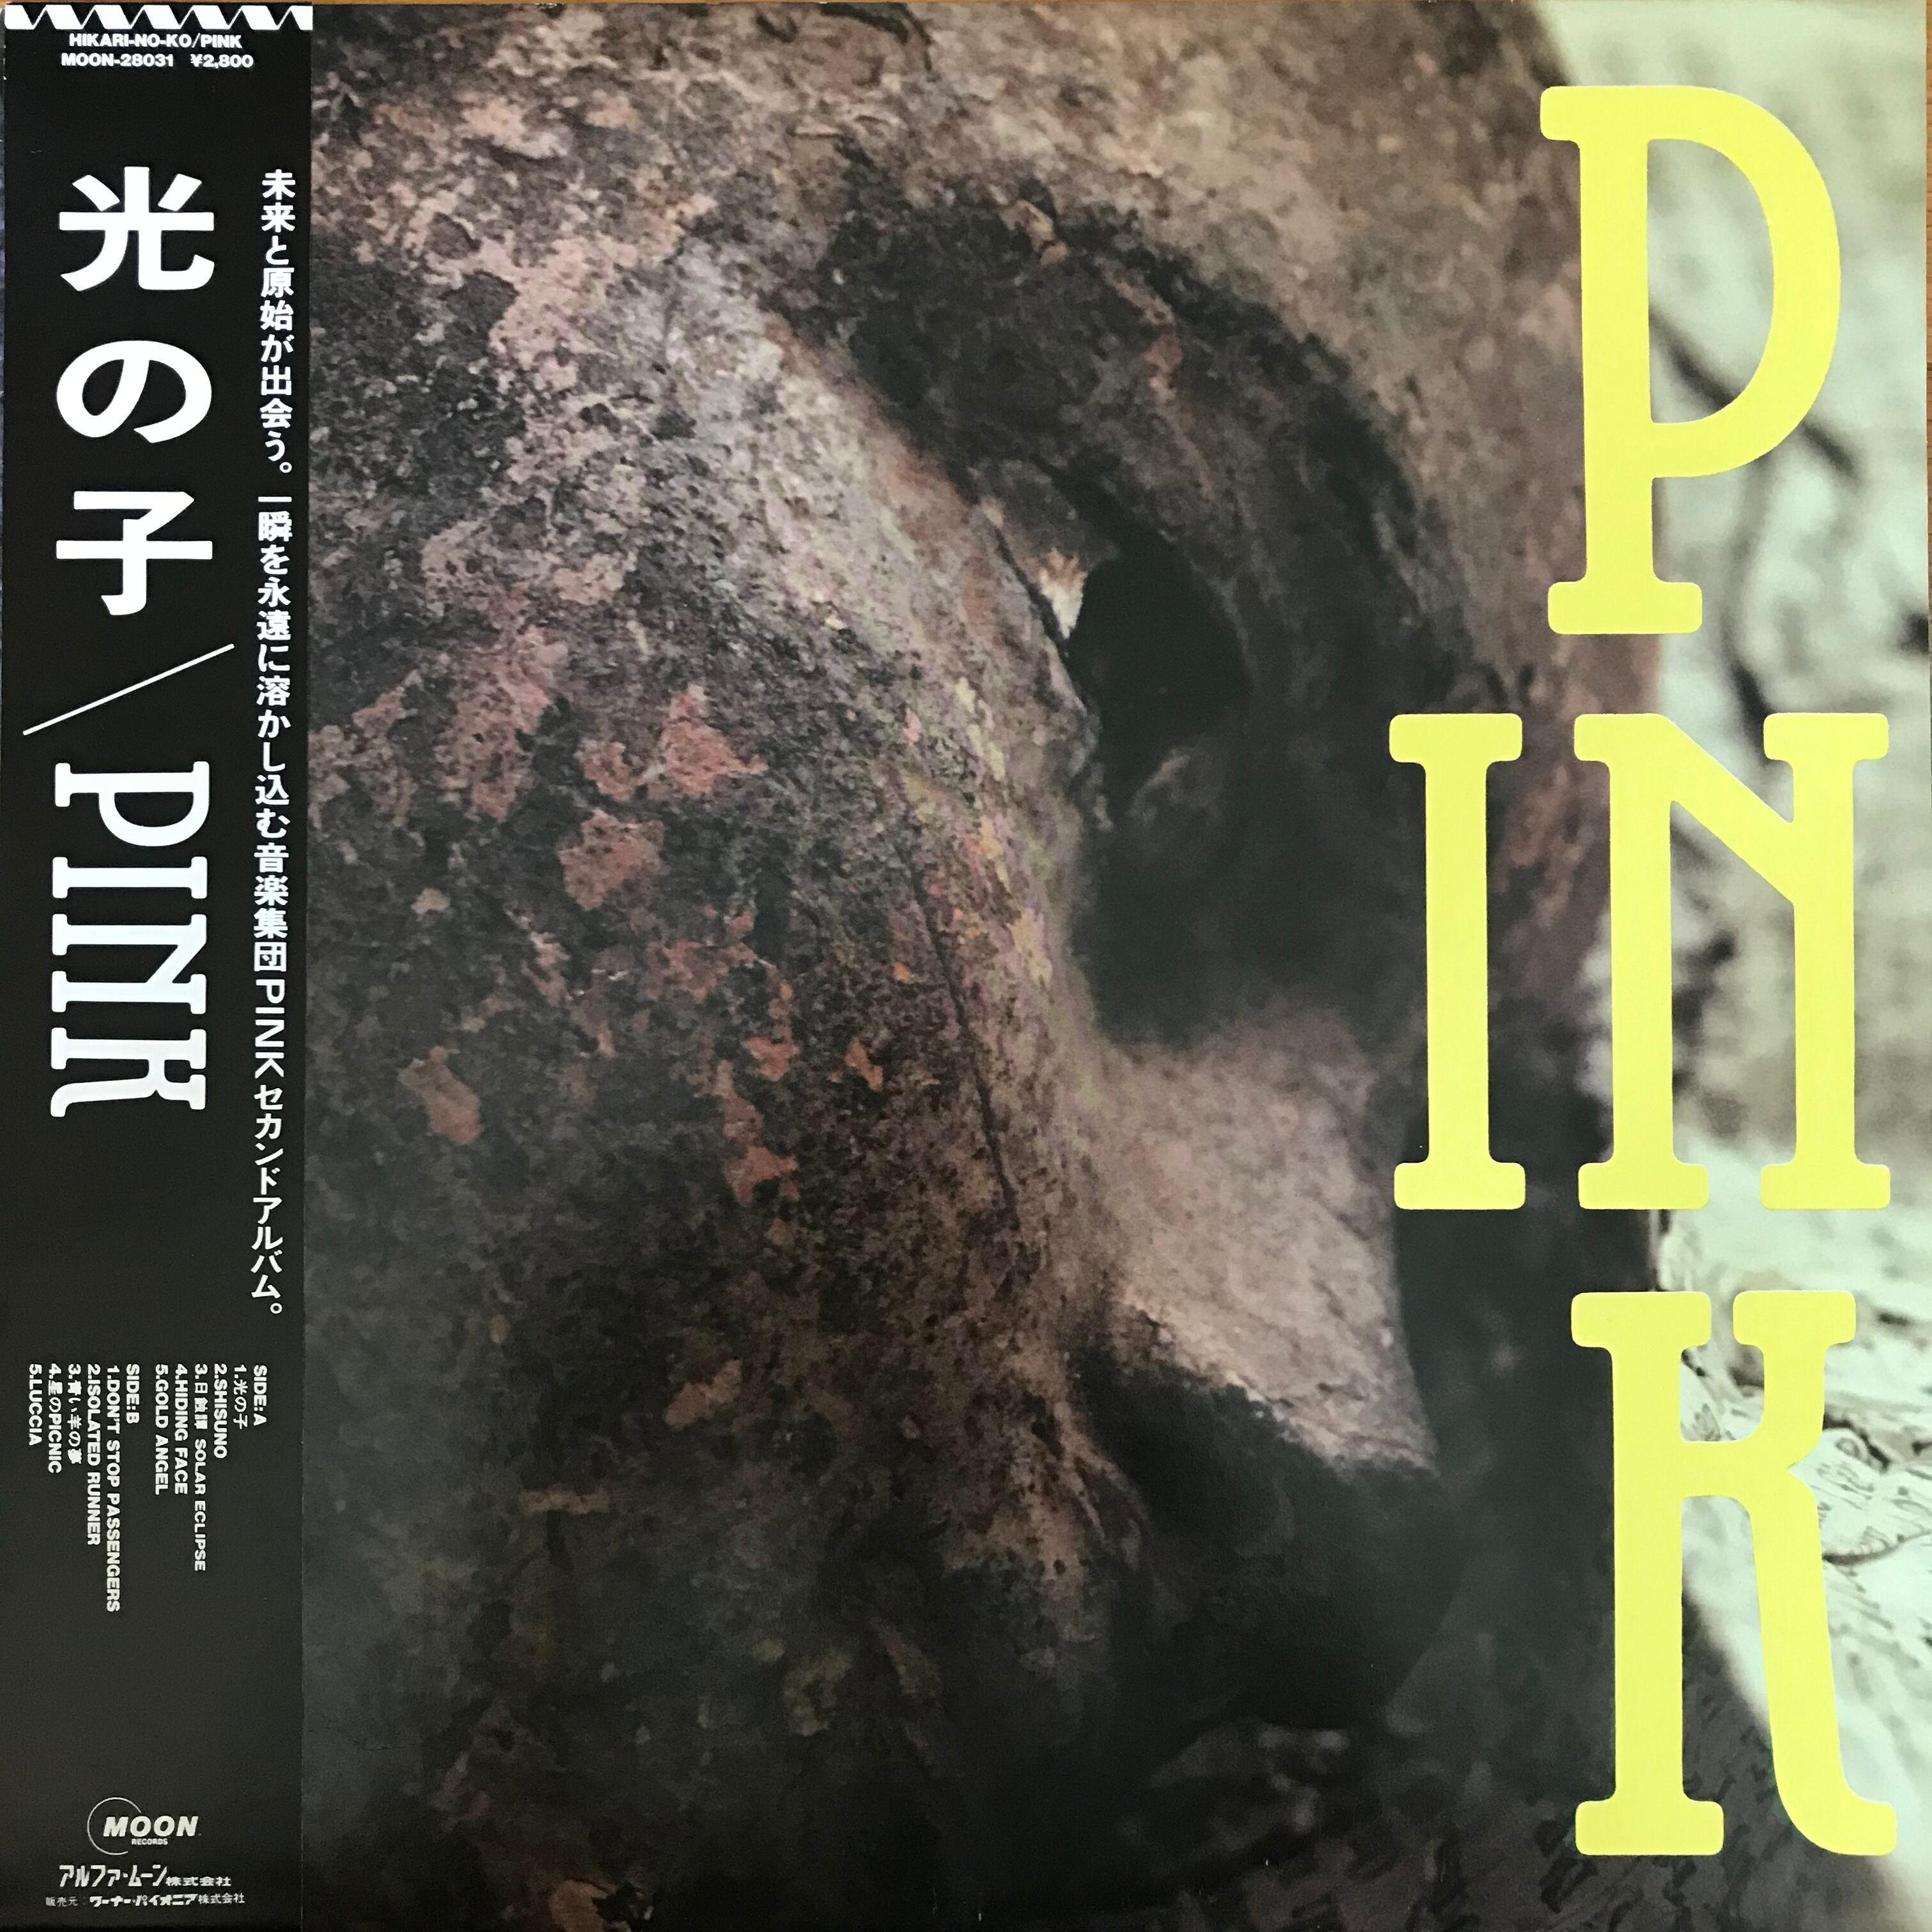 ピンク / 光の子 | PASSTIME RECORDS / パスタイム レコード